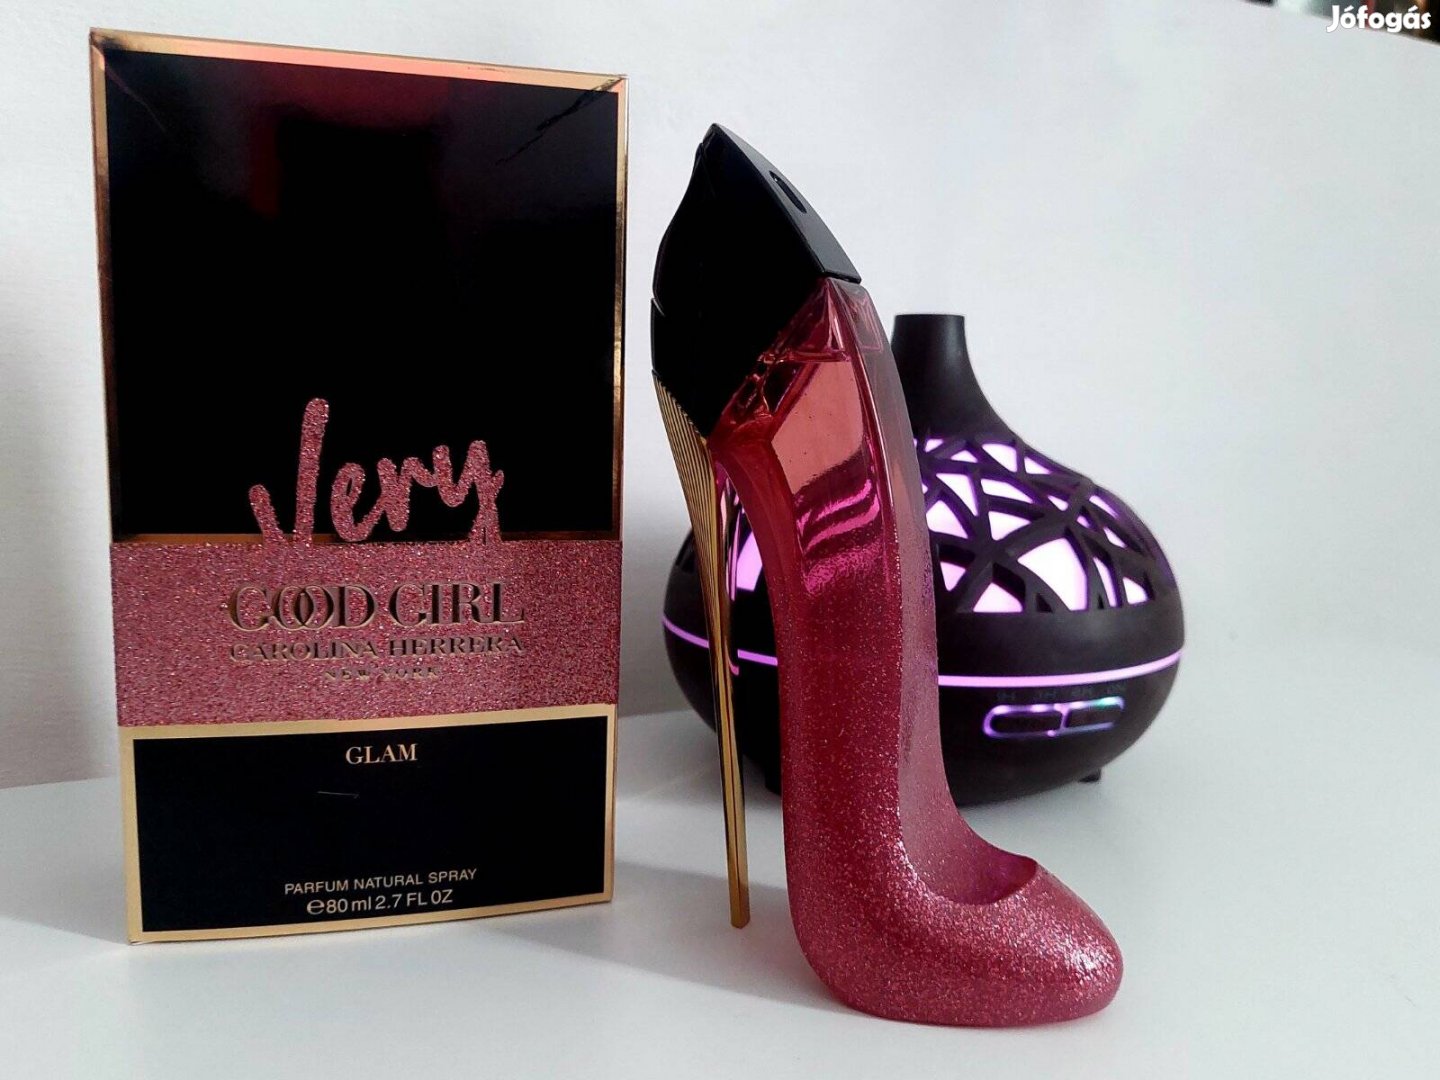 Carolina Herrera - Very Good Girl Glam parfüm